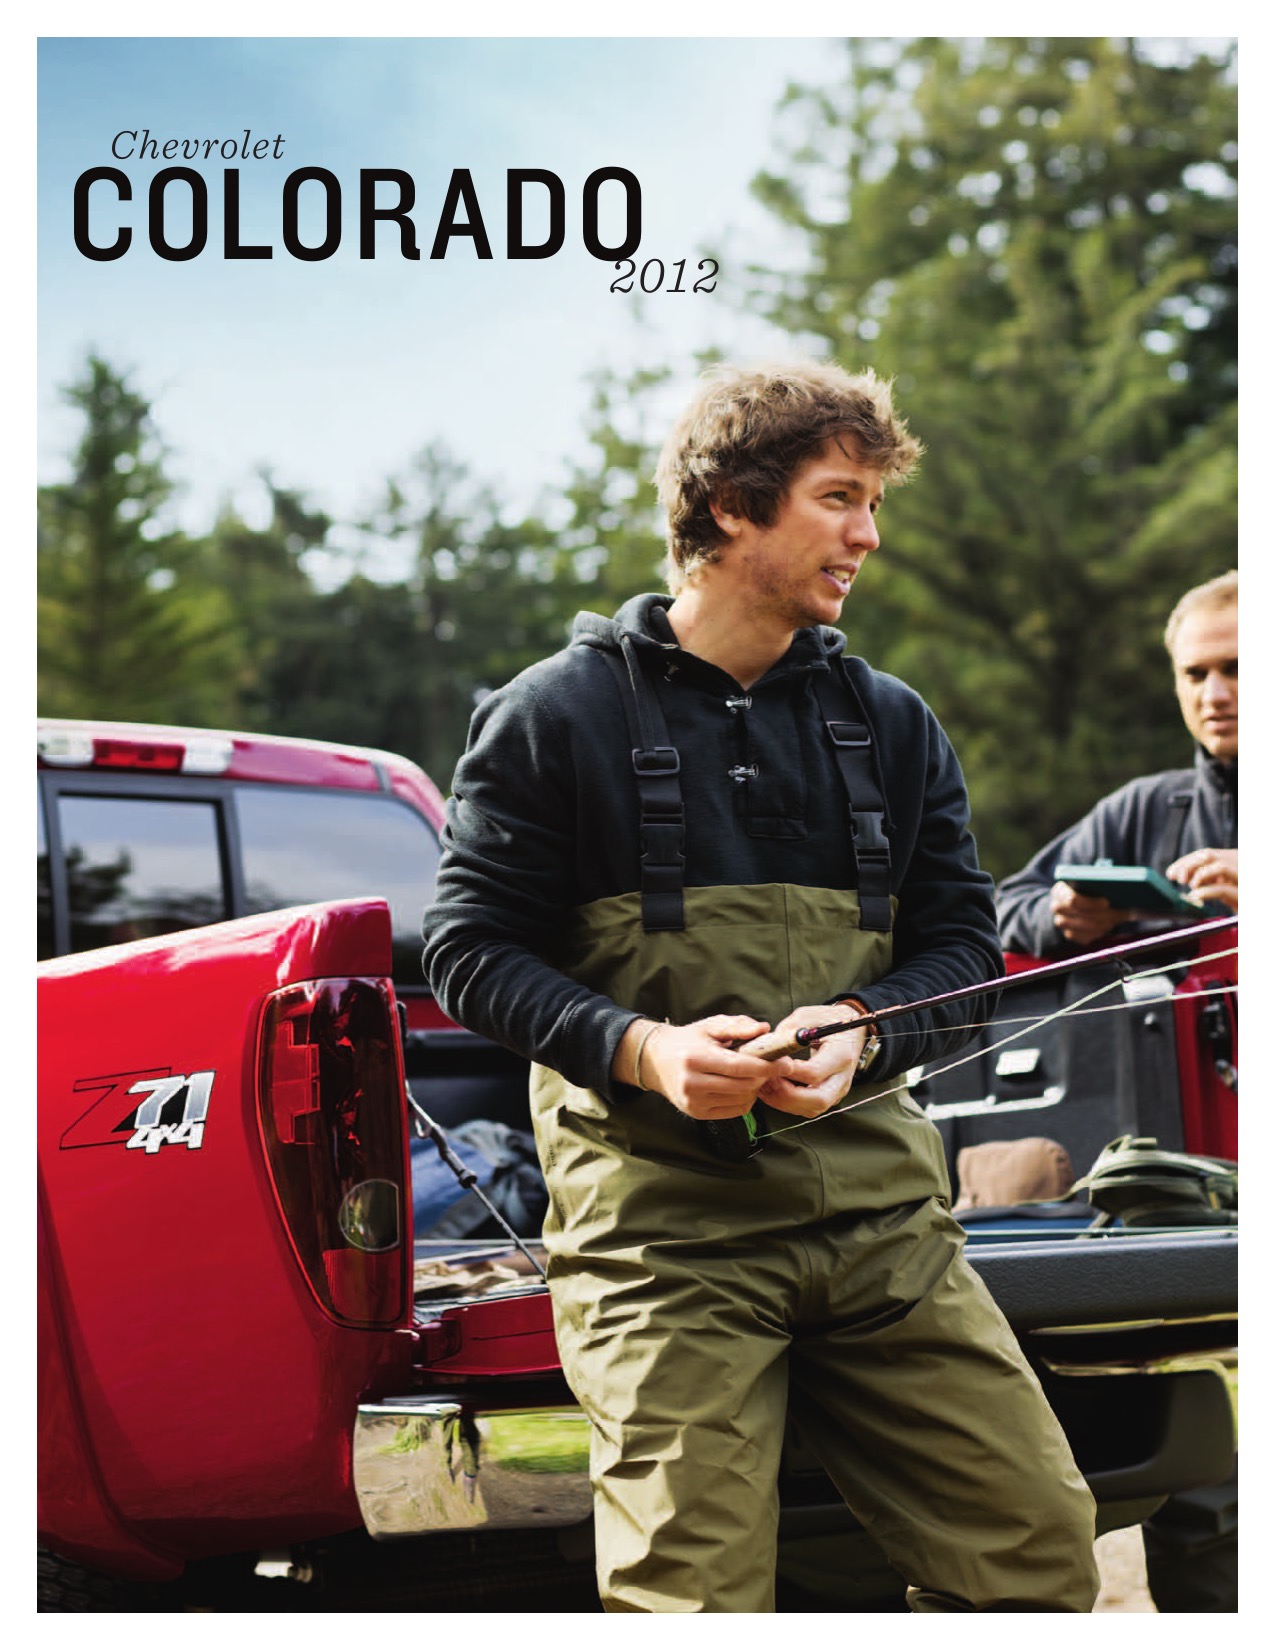 2012 Chevrolet Colorado Brochure